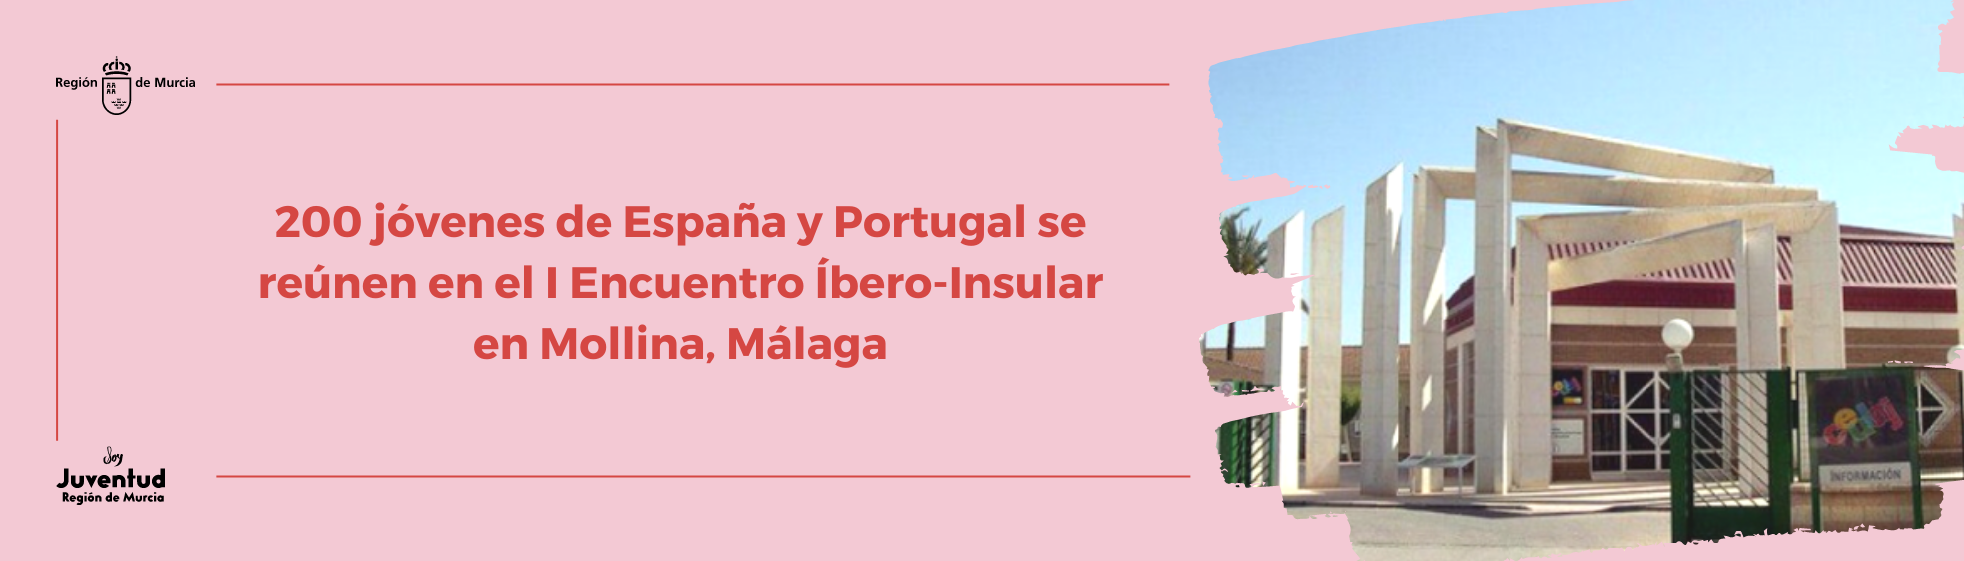 200 jóvenes de España y Portugal se reúnen en el I Encuentro Íbero-Insular en Mollina, Málaga